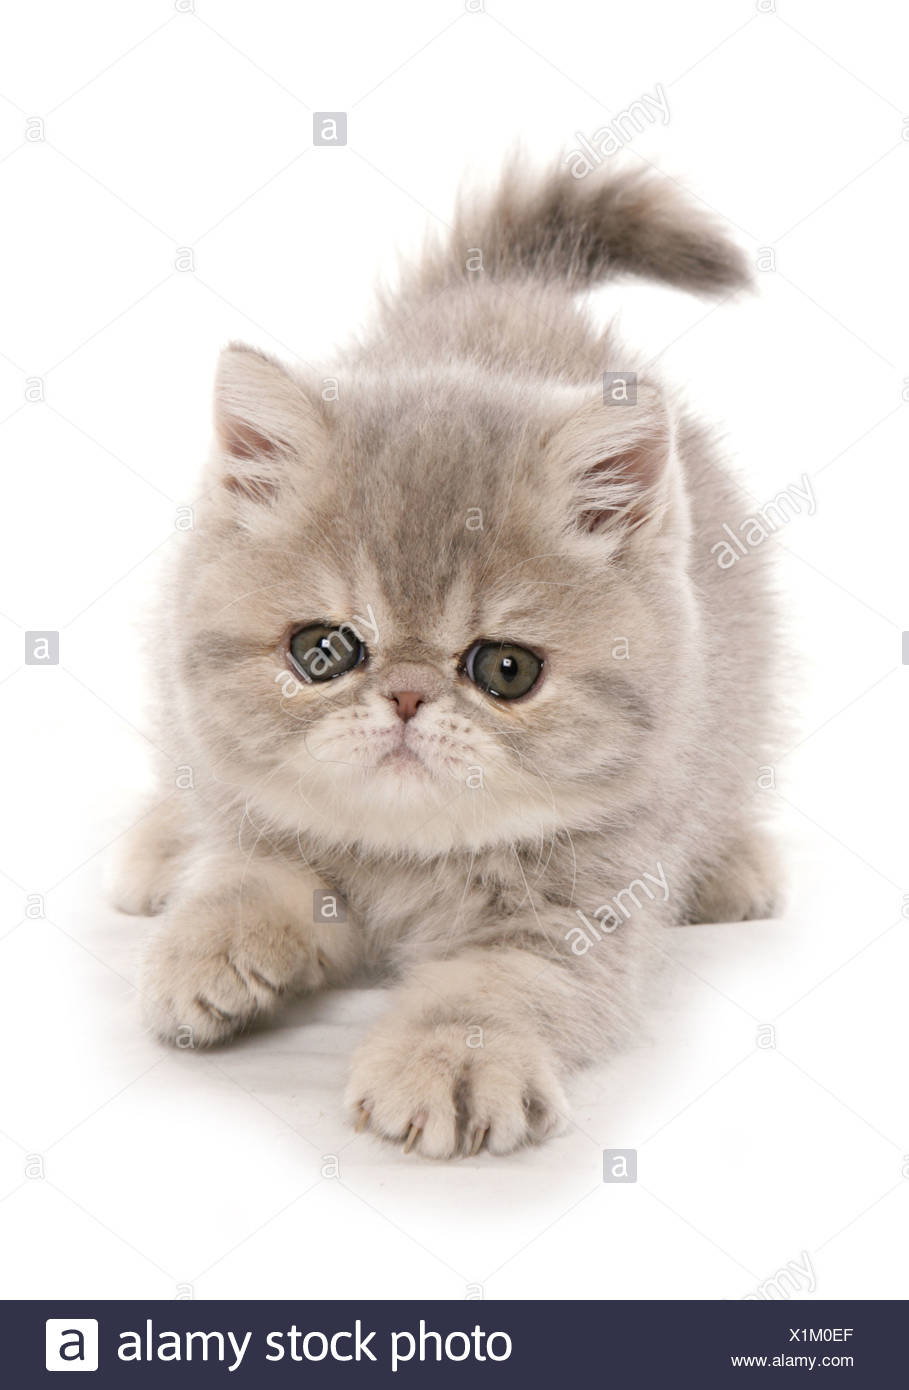 Inlandischen Katze Exotic Shorthair Kitten Polsterung Stockfotografie Alamy